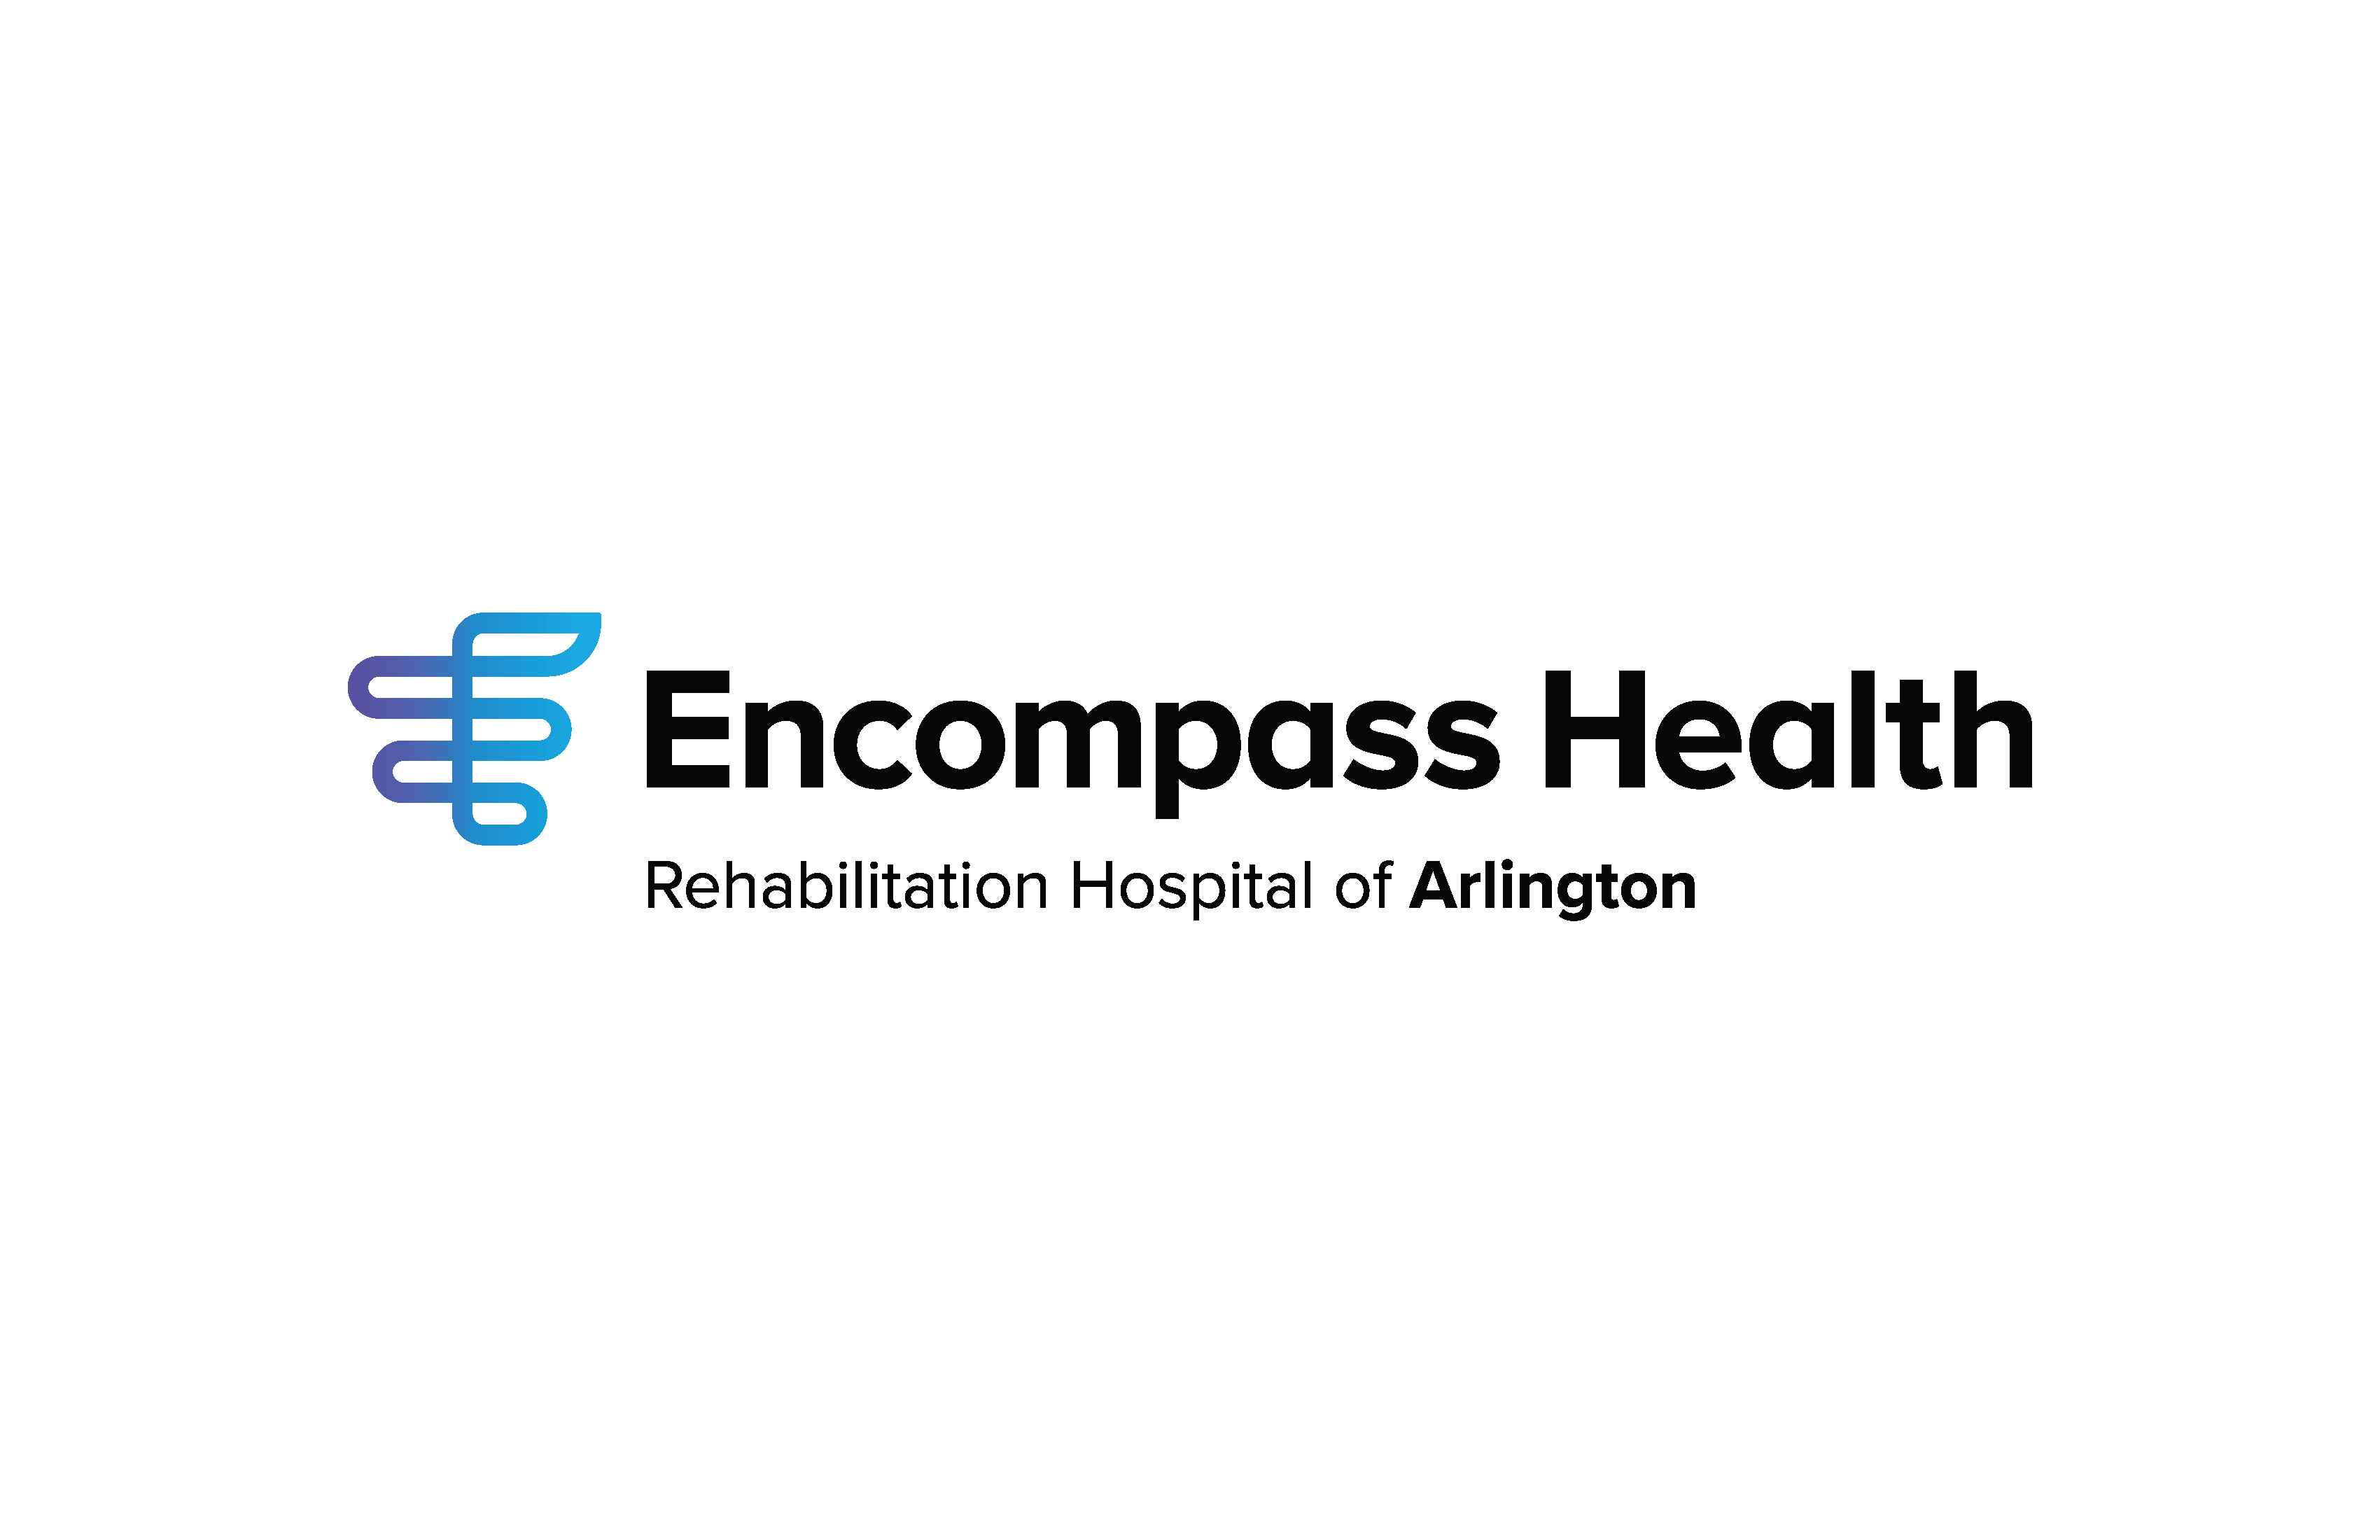 D. Encompass Arlington (Plata)